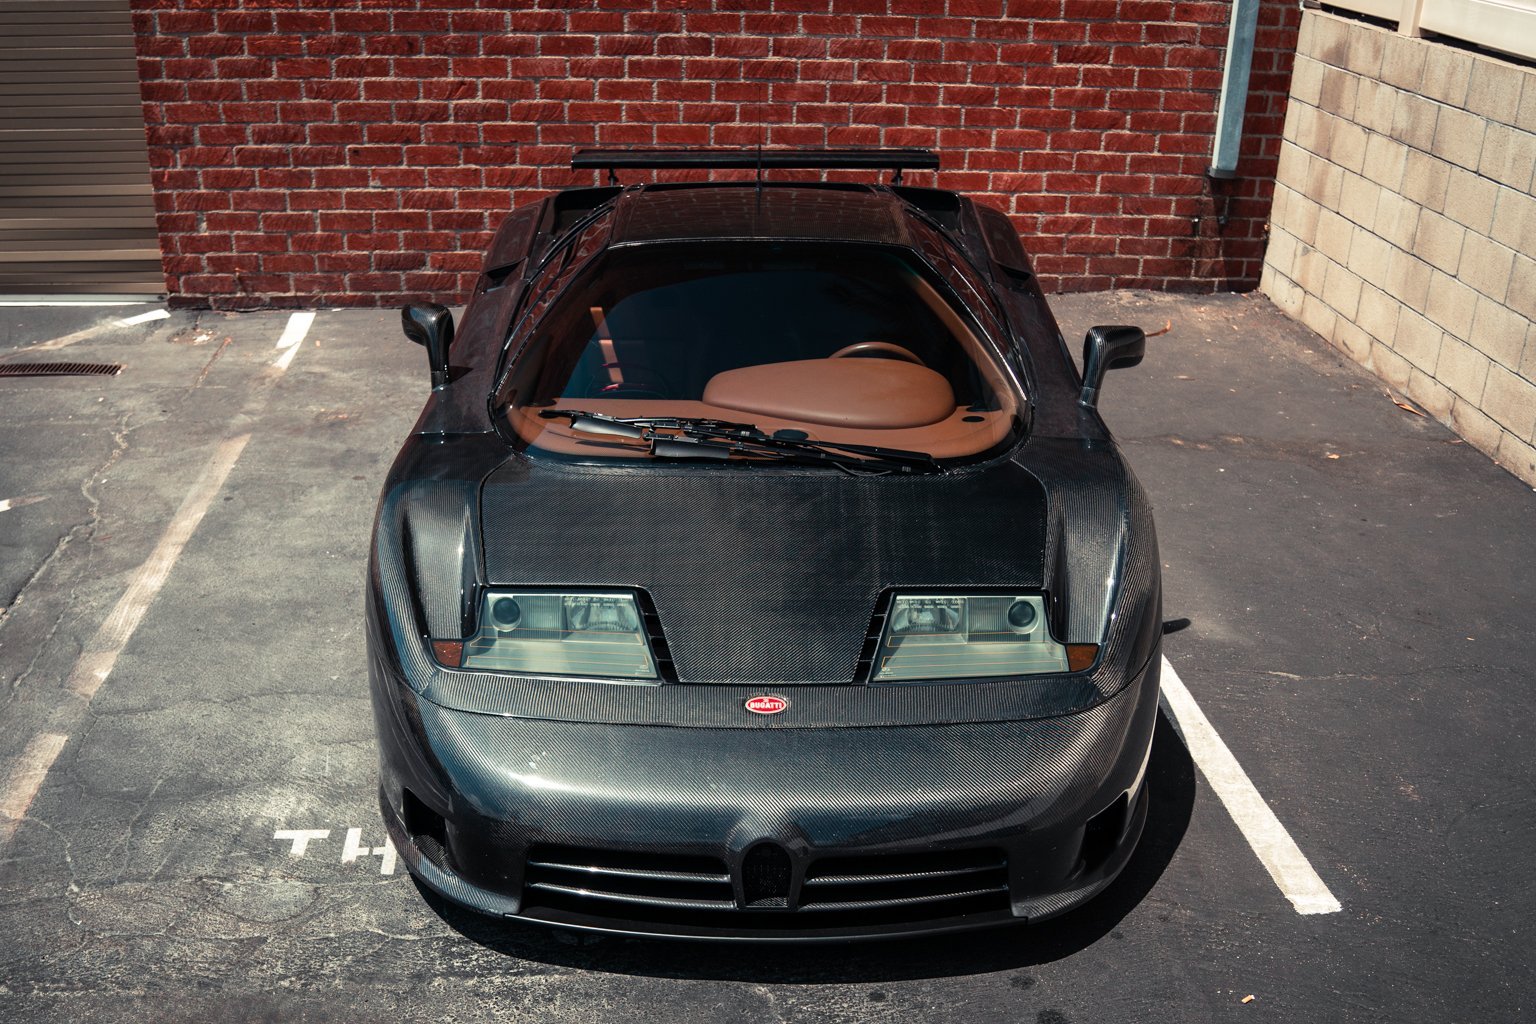 Meztelen Bugattit ritkán látni, ez az egy létezik 7